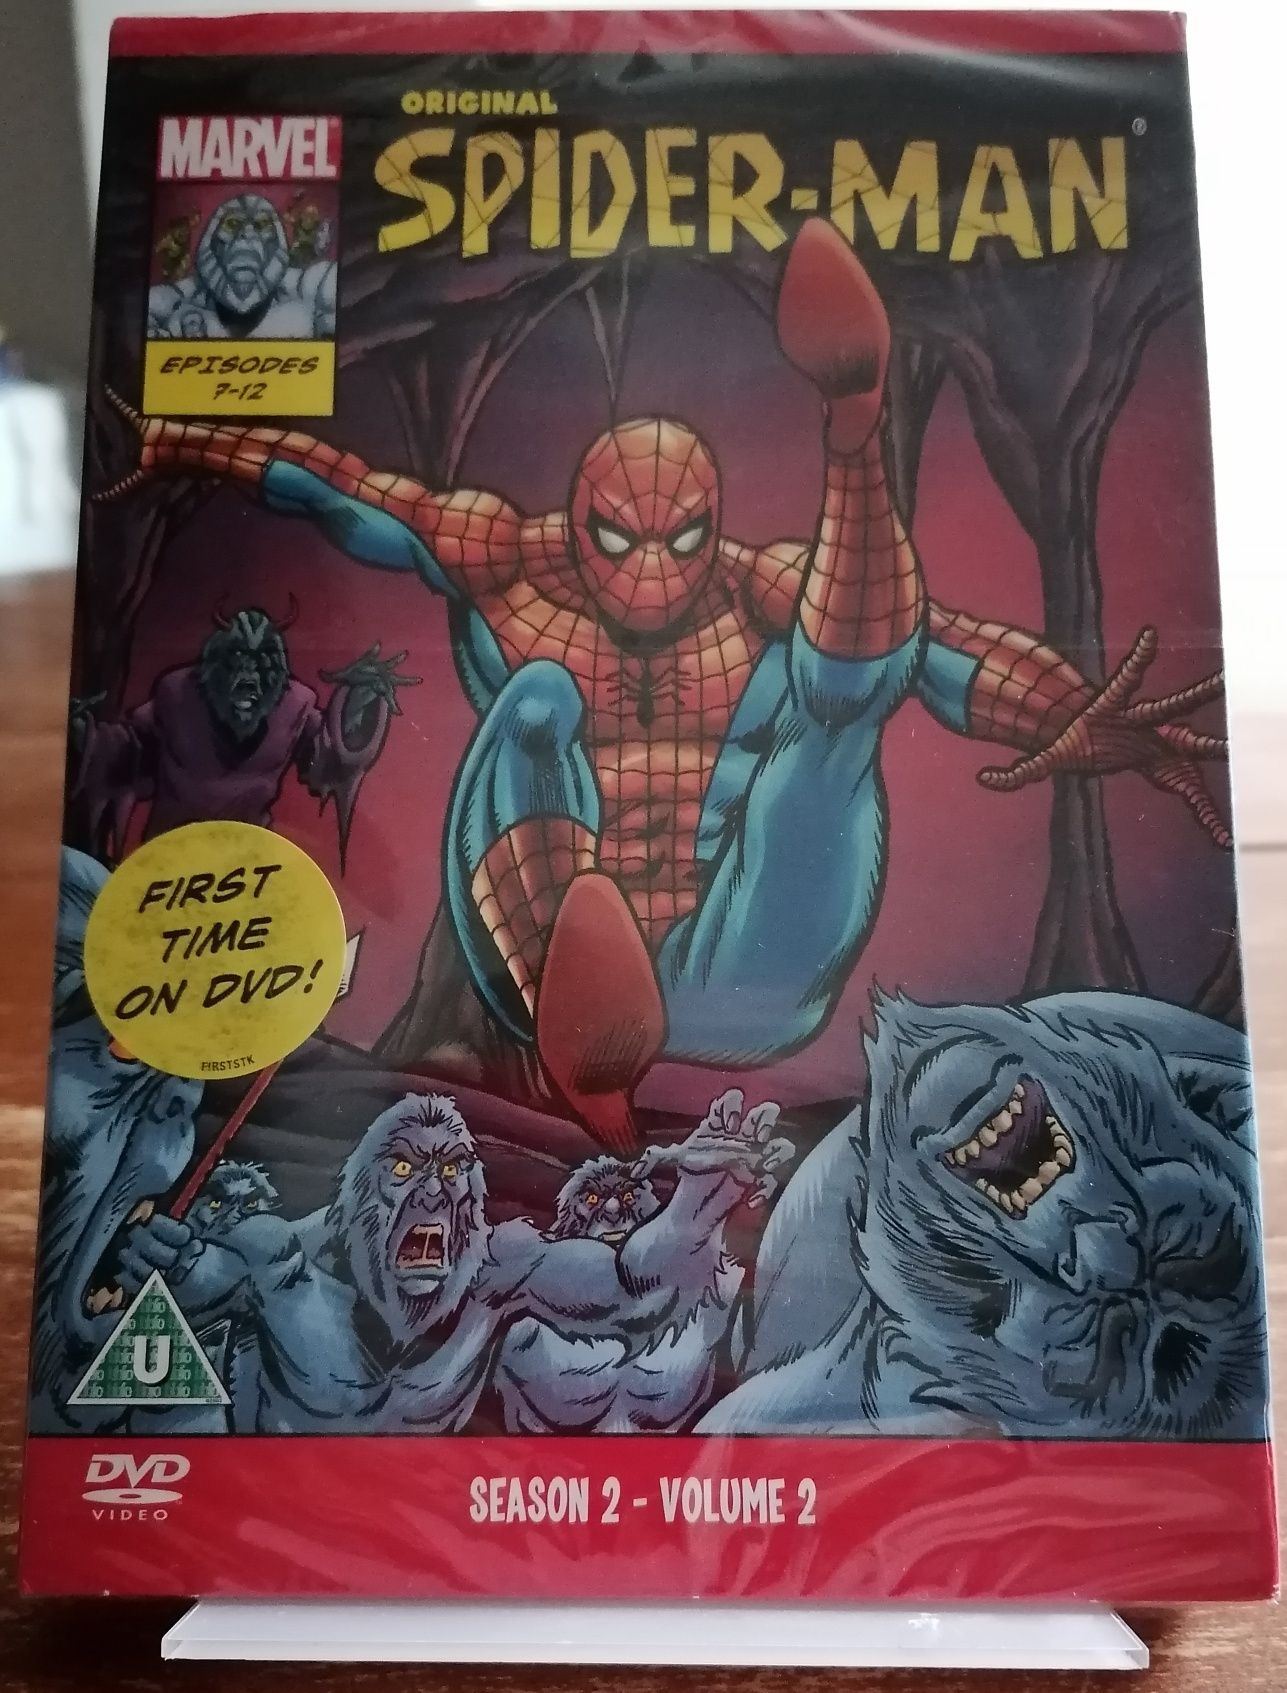 Original Spider-Man Season 2, Volume 2, Episodes 7-12 (1967) [DVD]